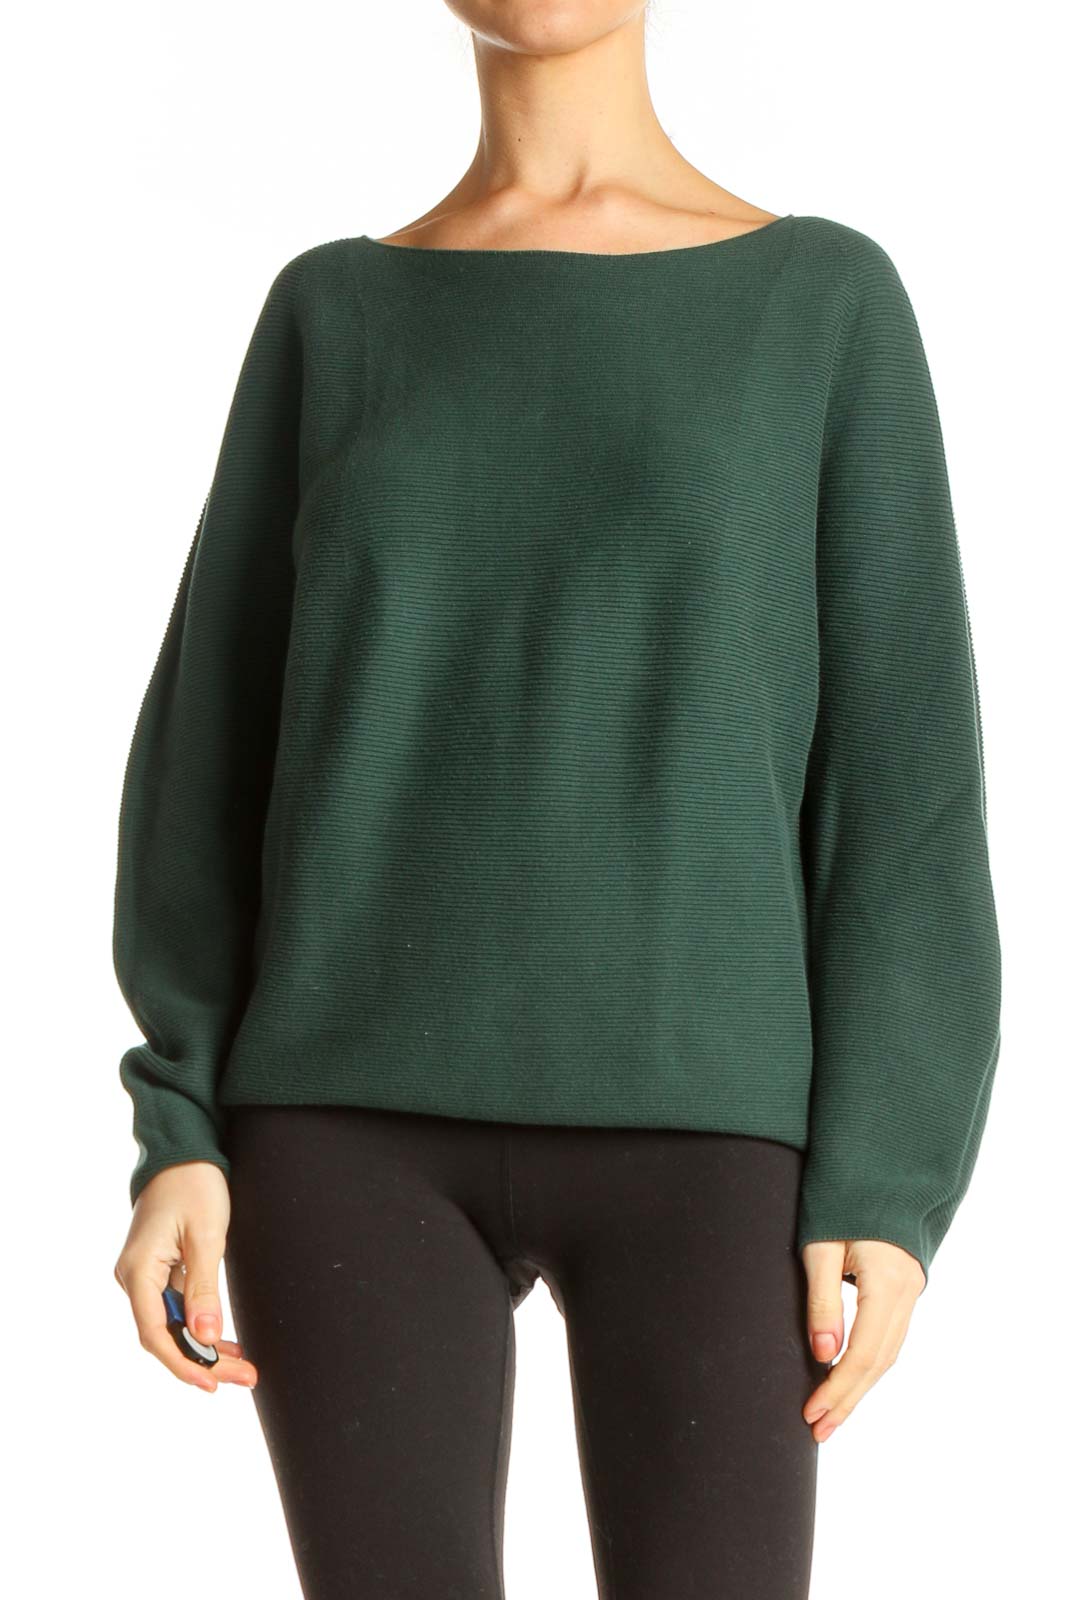 Green Sweatshirt Front